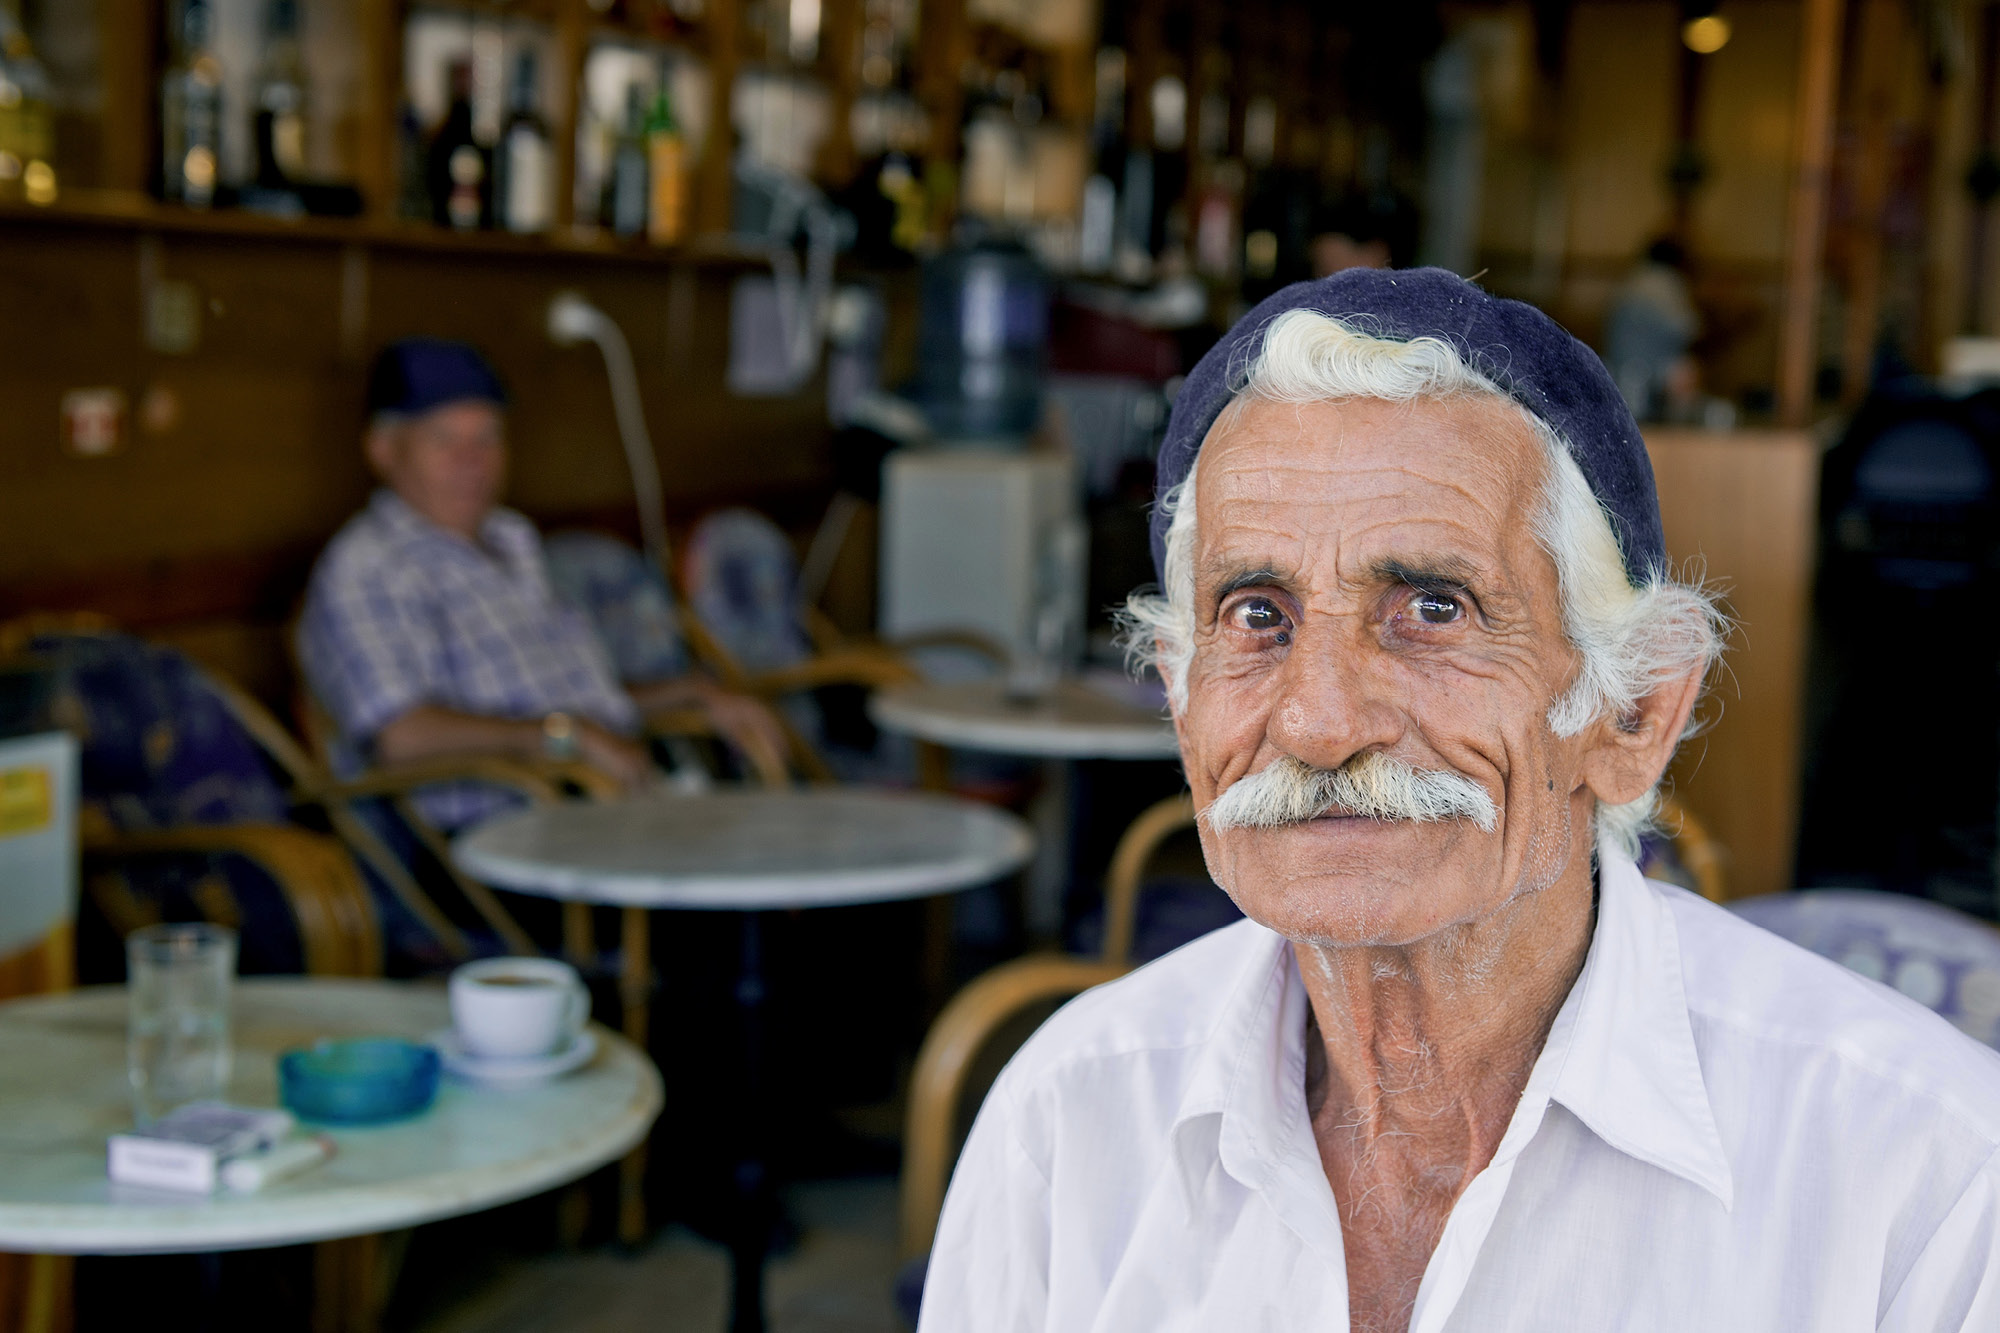 Reportagefotografie eines alten Mannes in einer Cafebar